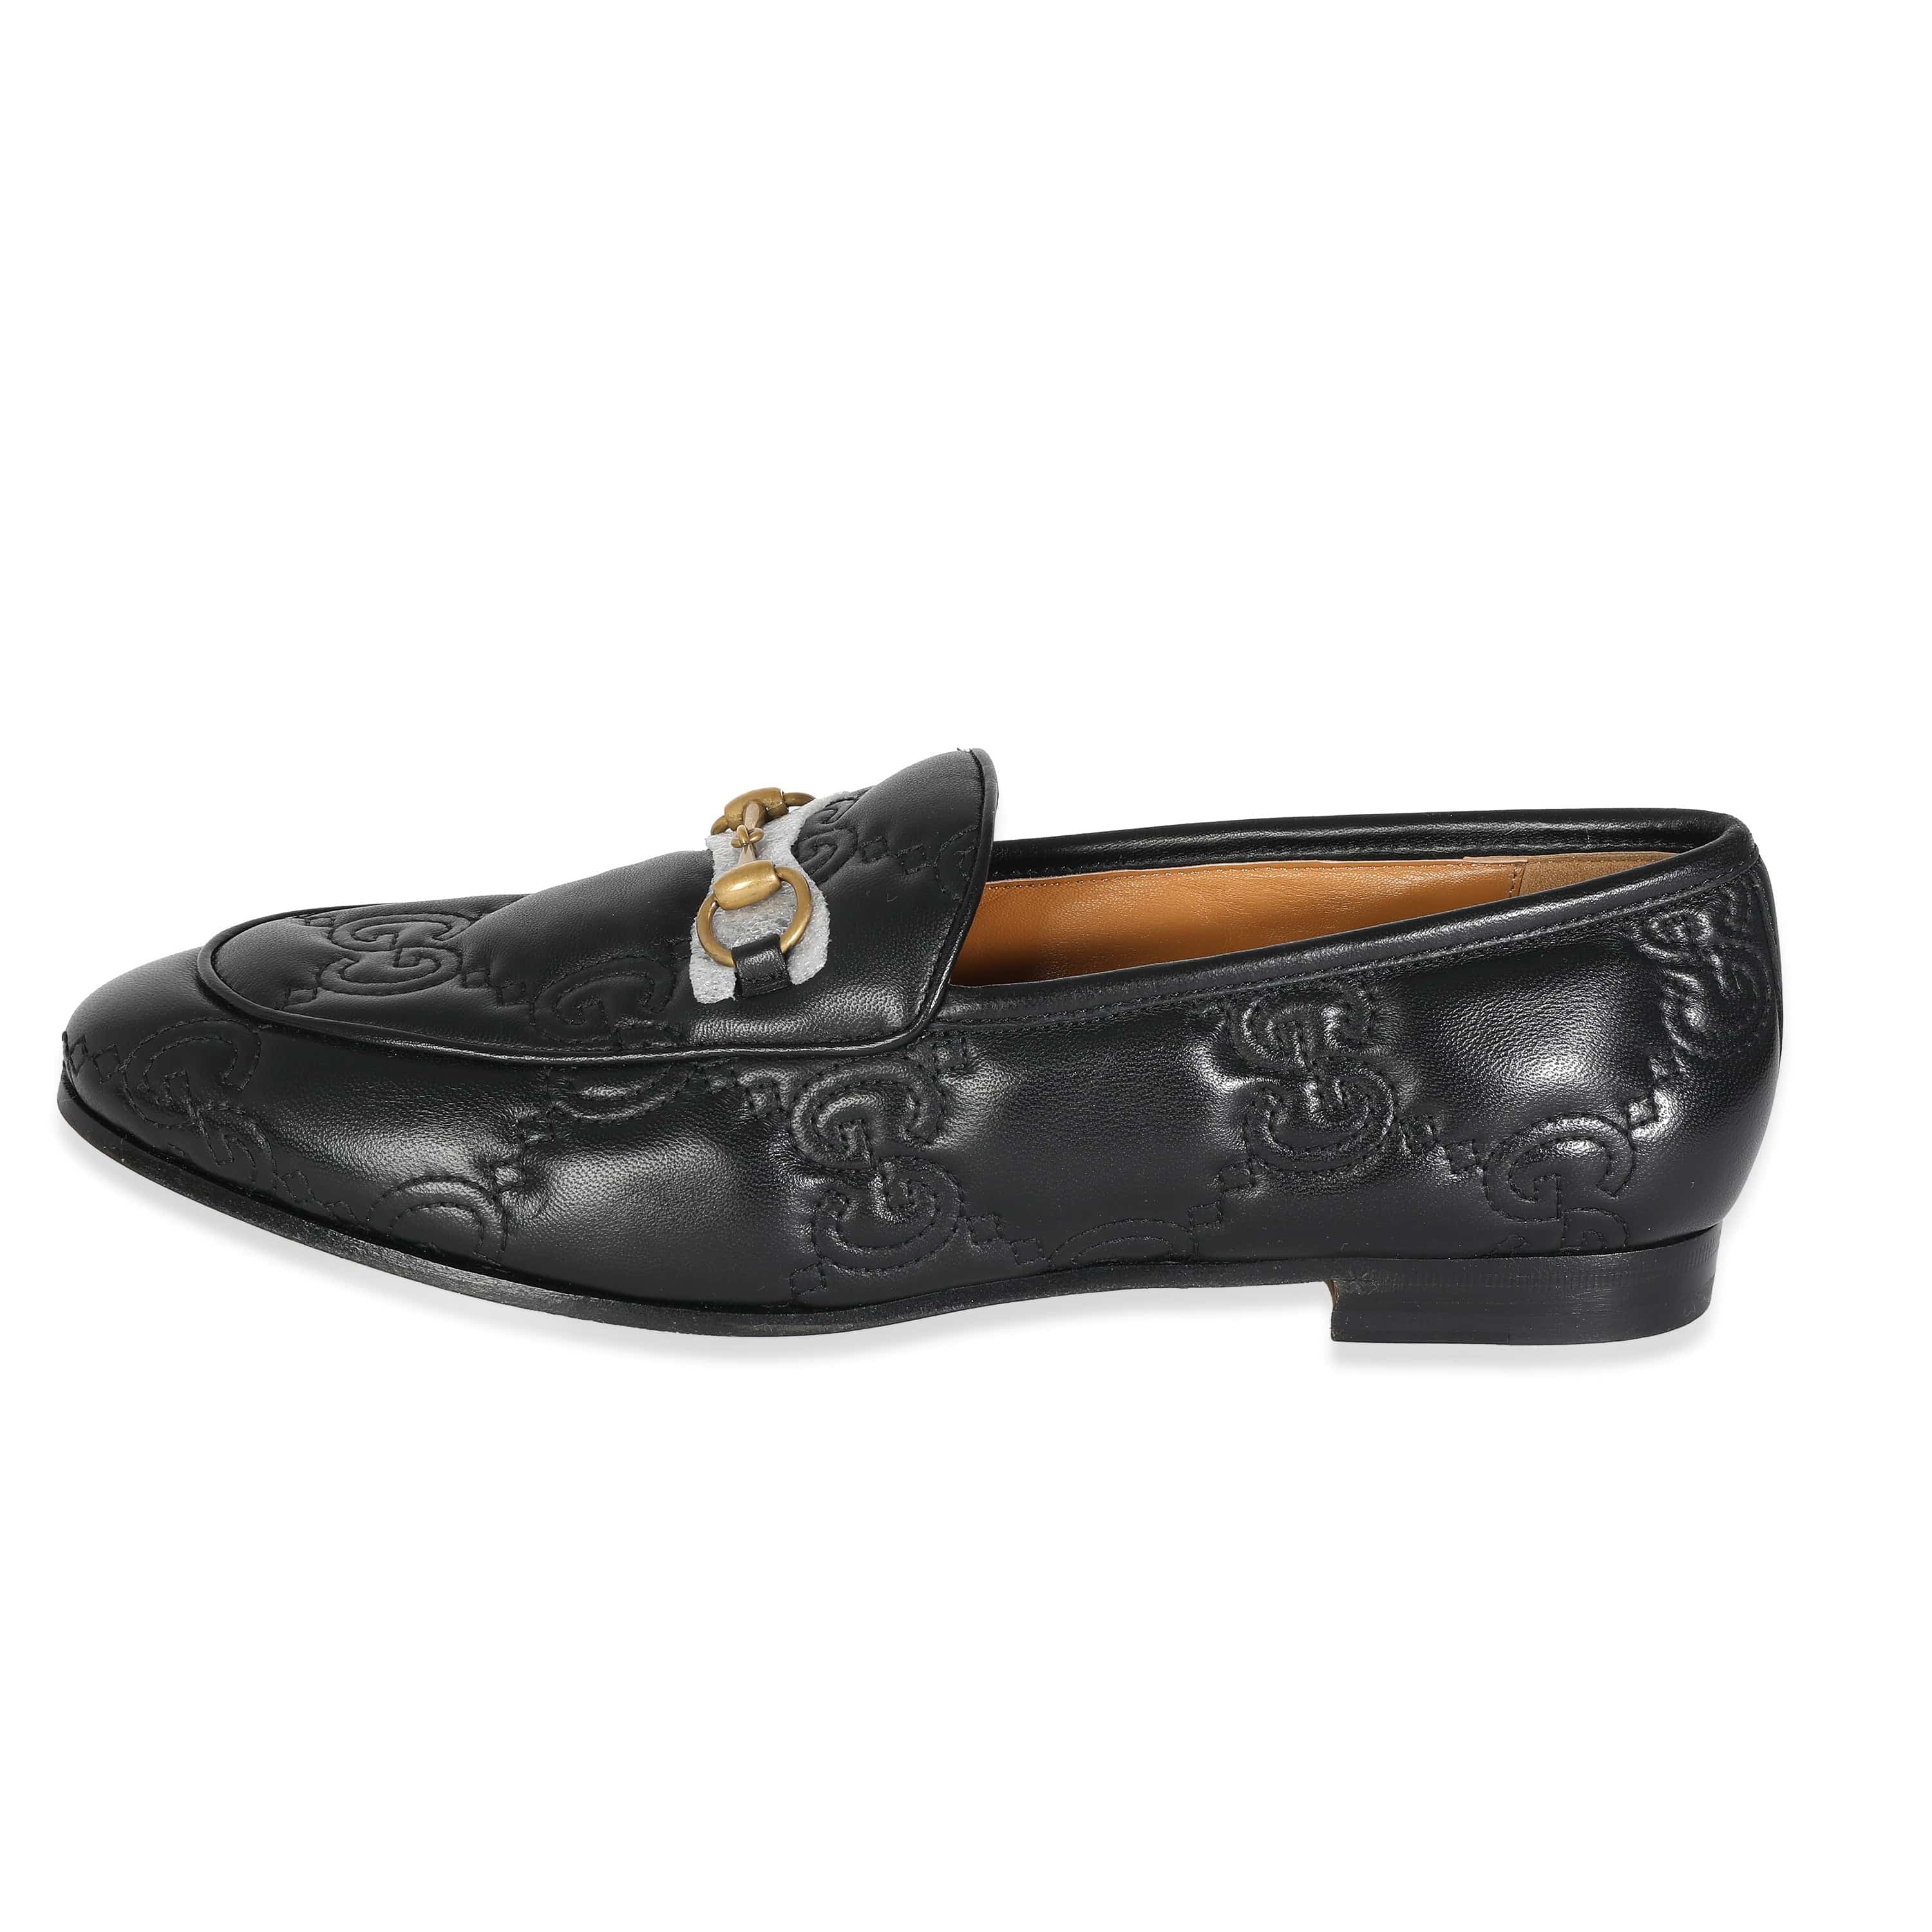 Gucci Gucci Black Guccissima Leather Loafers Size 41 ULC1046